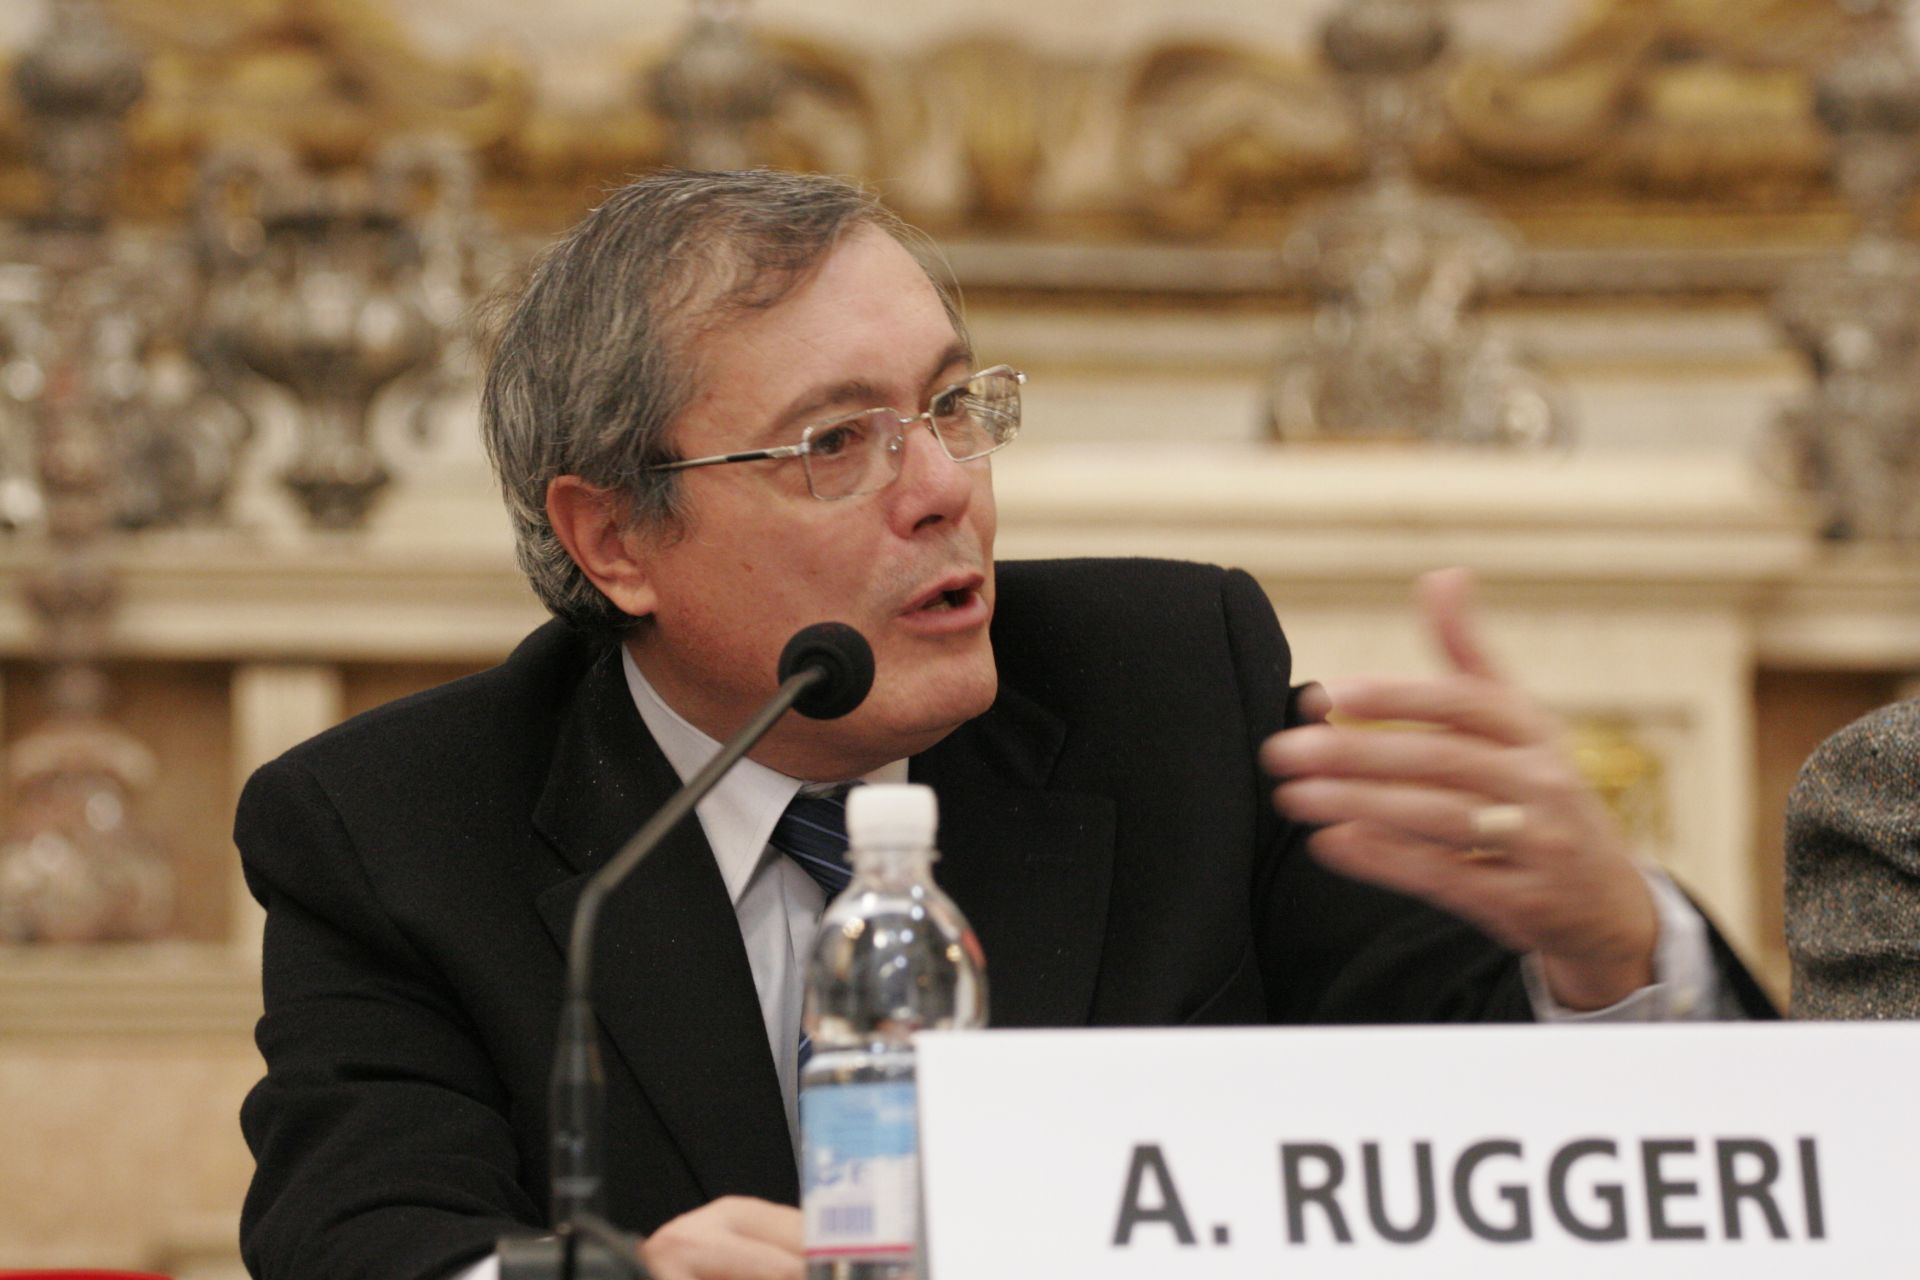 Antonio Ruggeri